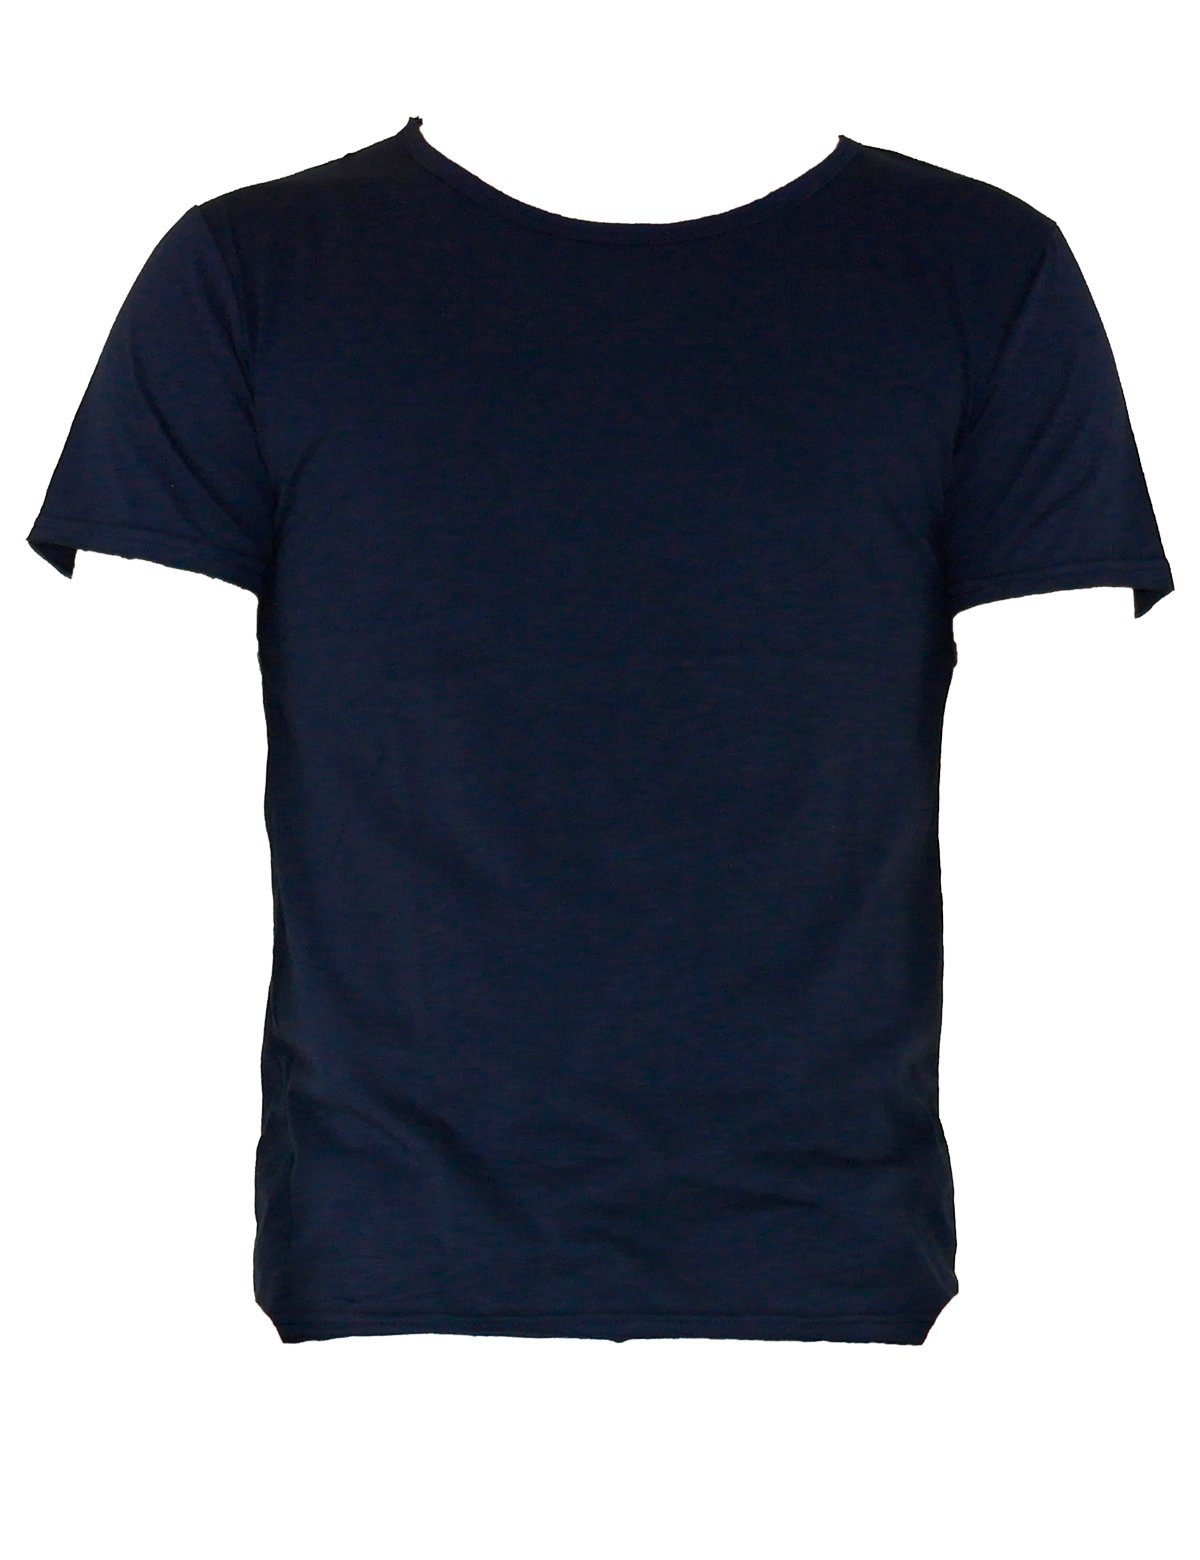 YESET T-Shirt Herren Shirt Top Tank T-Shirt Figurbetont Hemd Kurzarm Poloshirt Dunkelblau 551